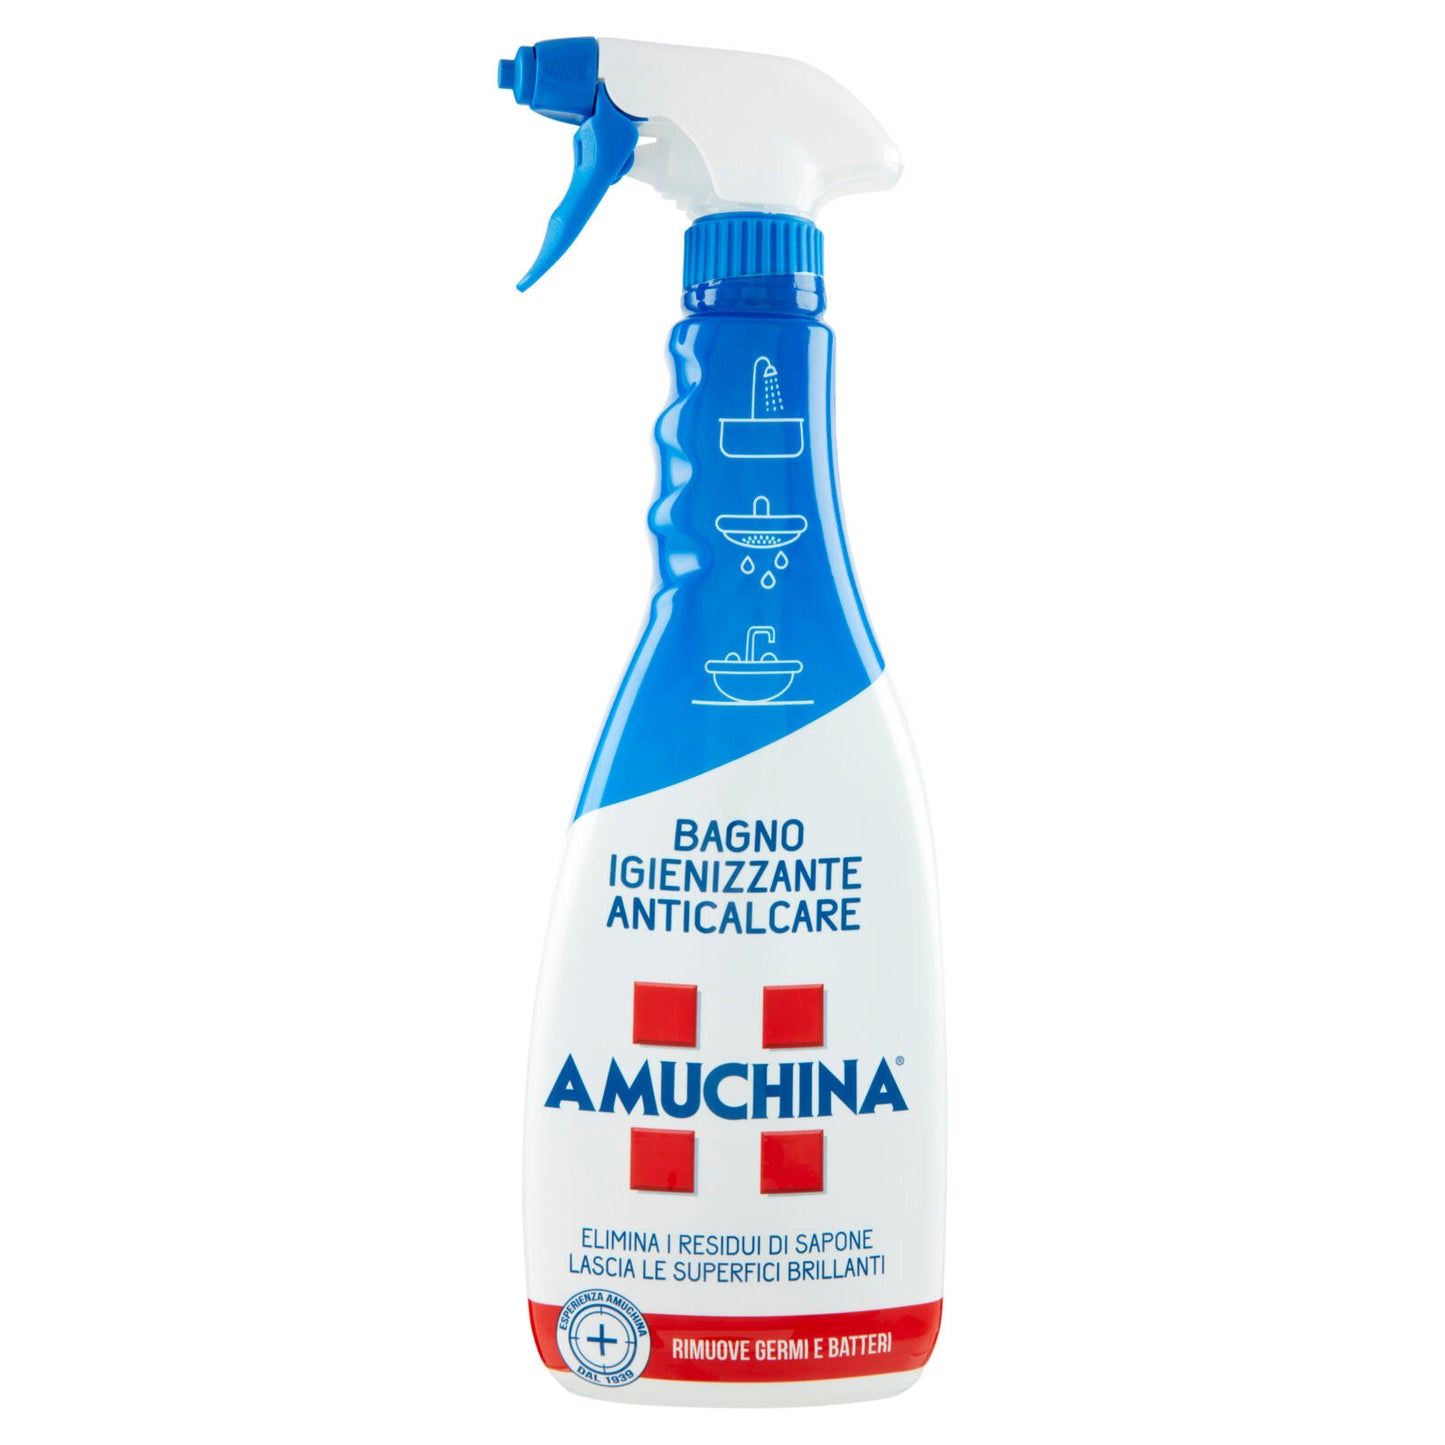 Amuchina Bagno Igienizzante Anticalcare 750 ml